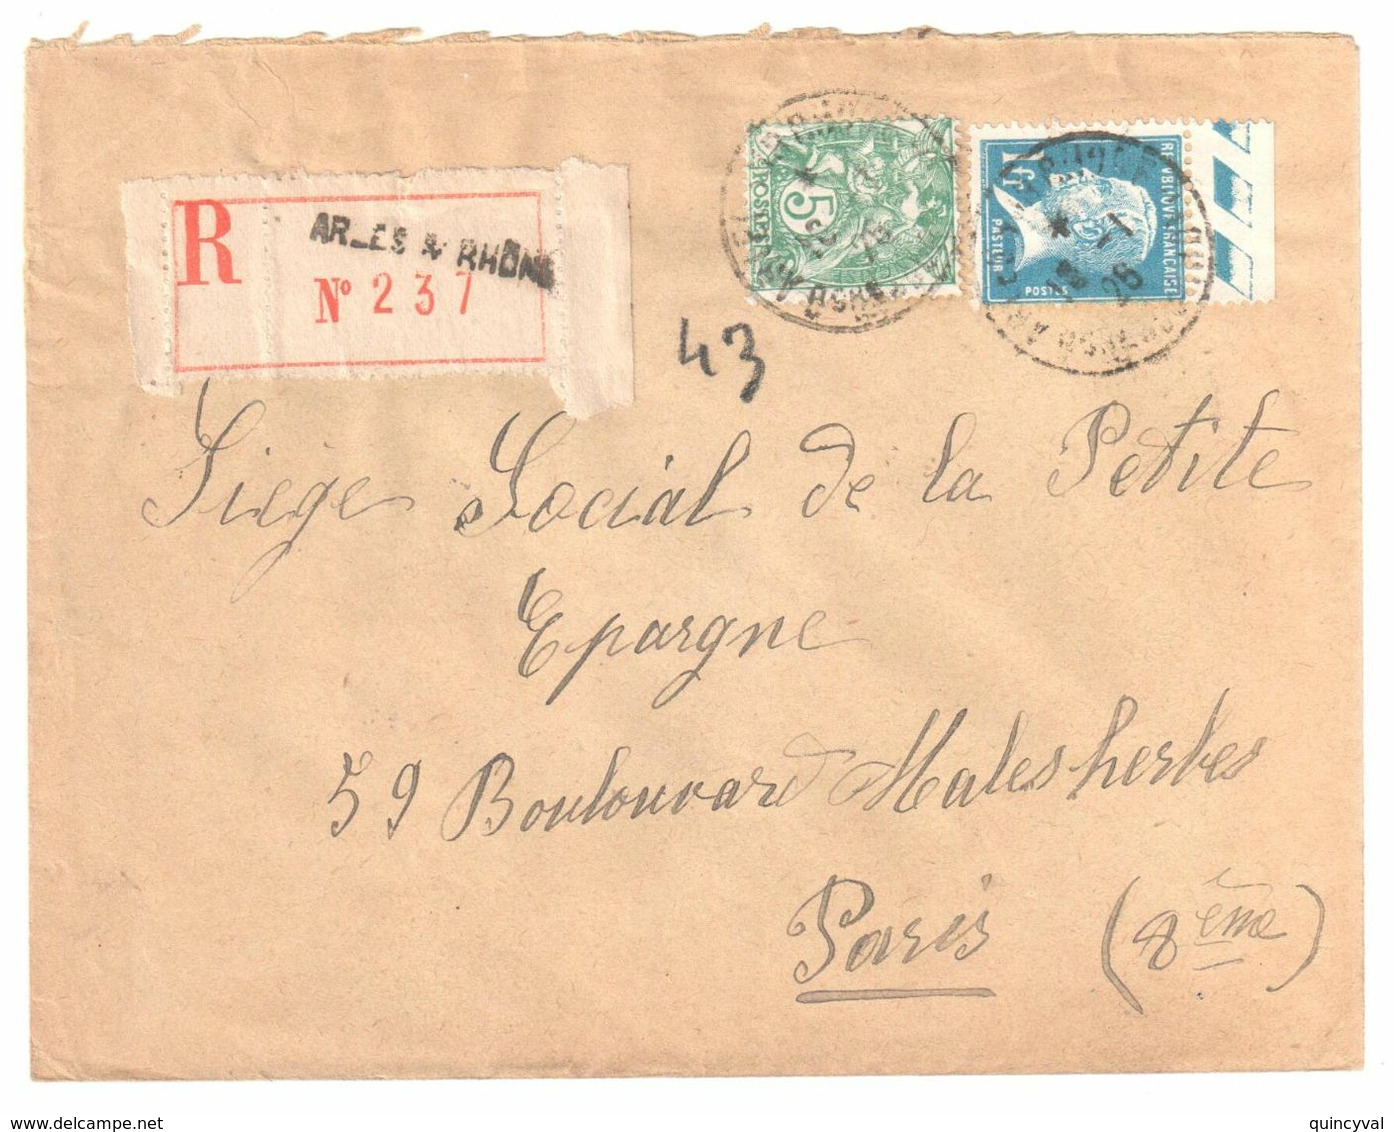 ARLES S RHONE Lettre Recommandée 1 F Pasteur Bord De Feuille 5c Blanc Yv 111 179 Ob 18 1 1926 - Covers & Documents